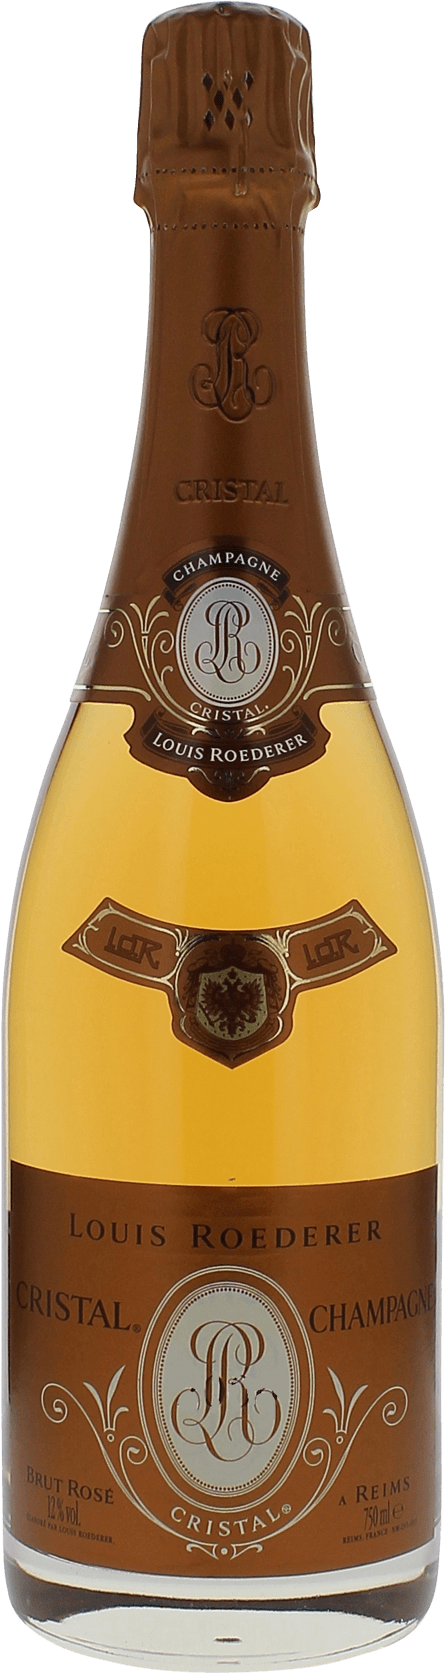 Cristal roederer ros 2009  Roederer, Champagne